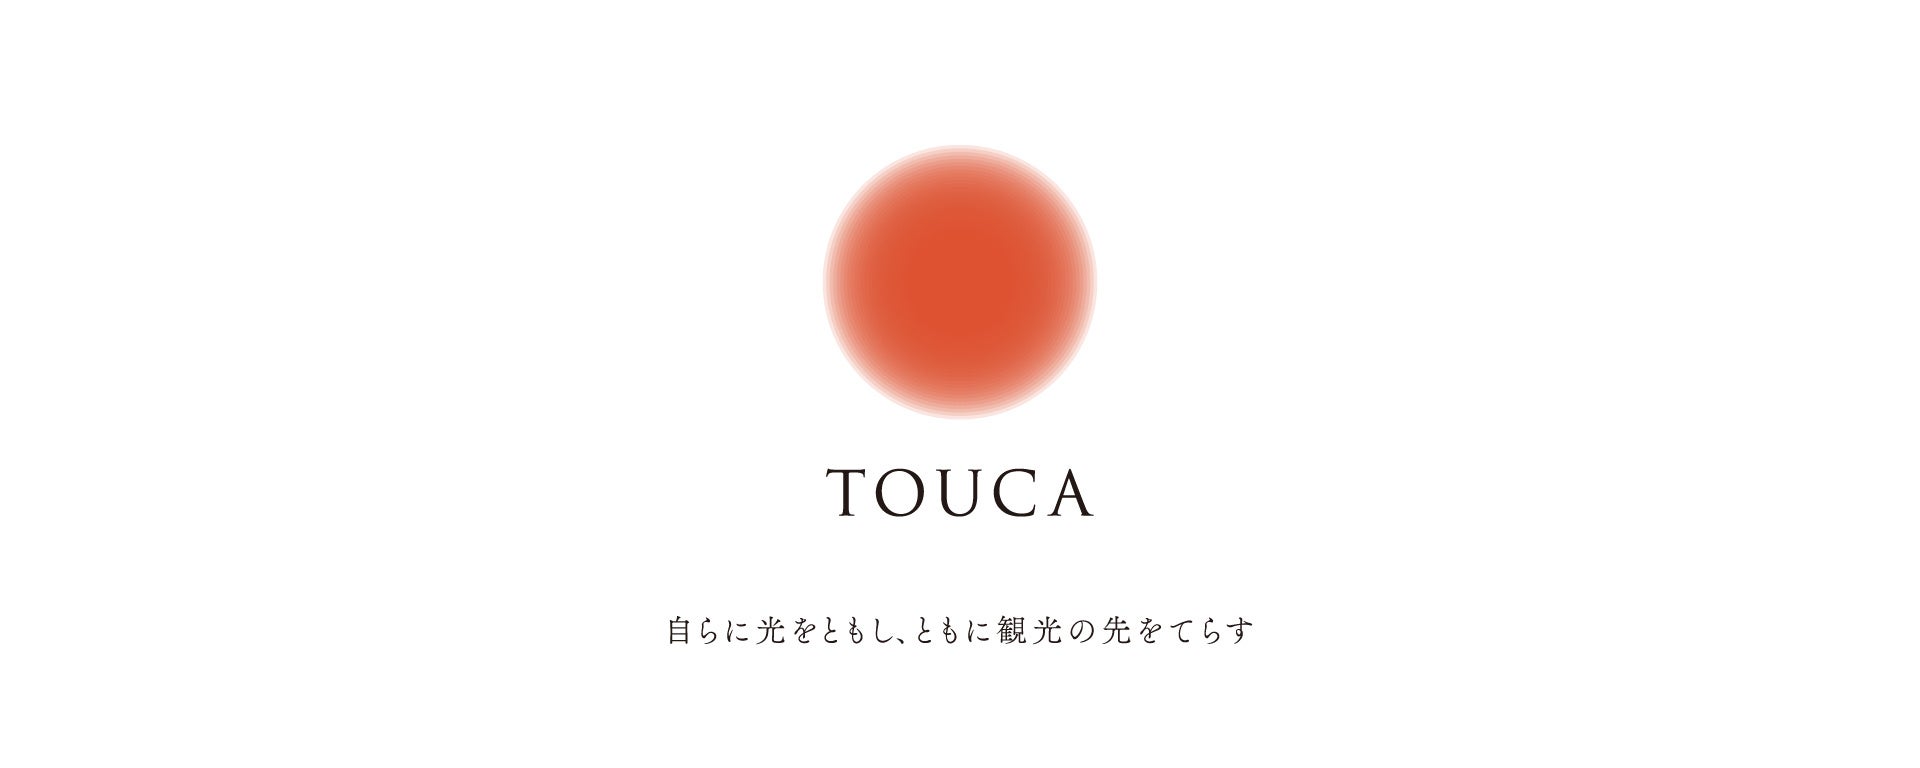 参画地域拡大！旅するフィールドワーク「TOUCA」2期を開催します